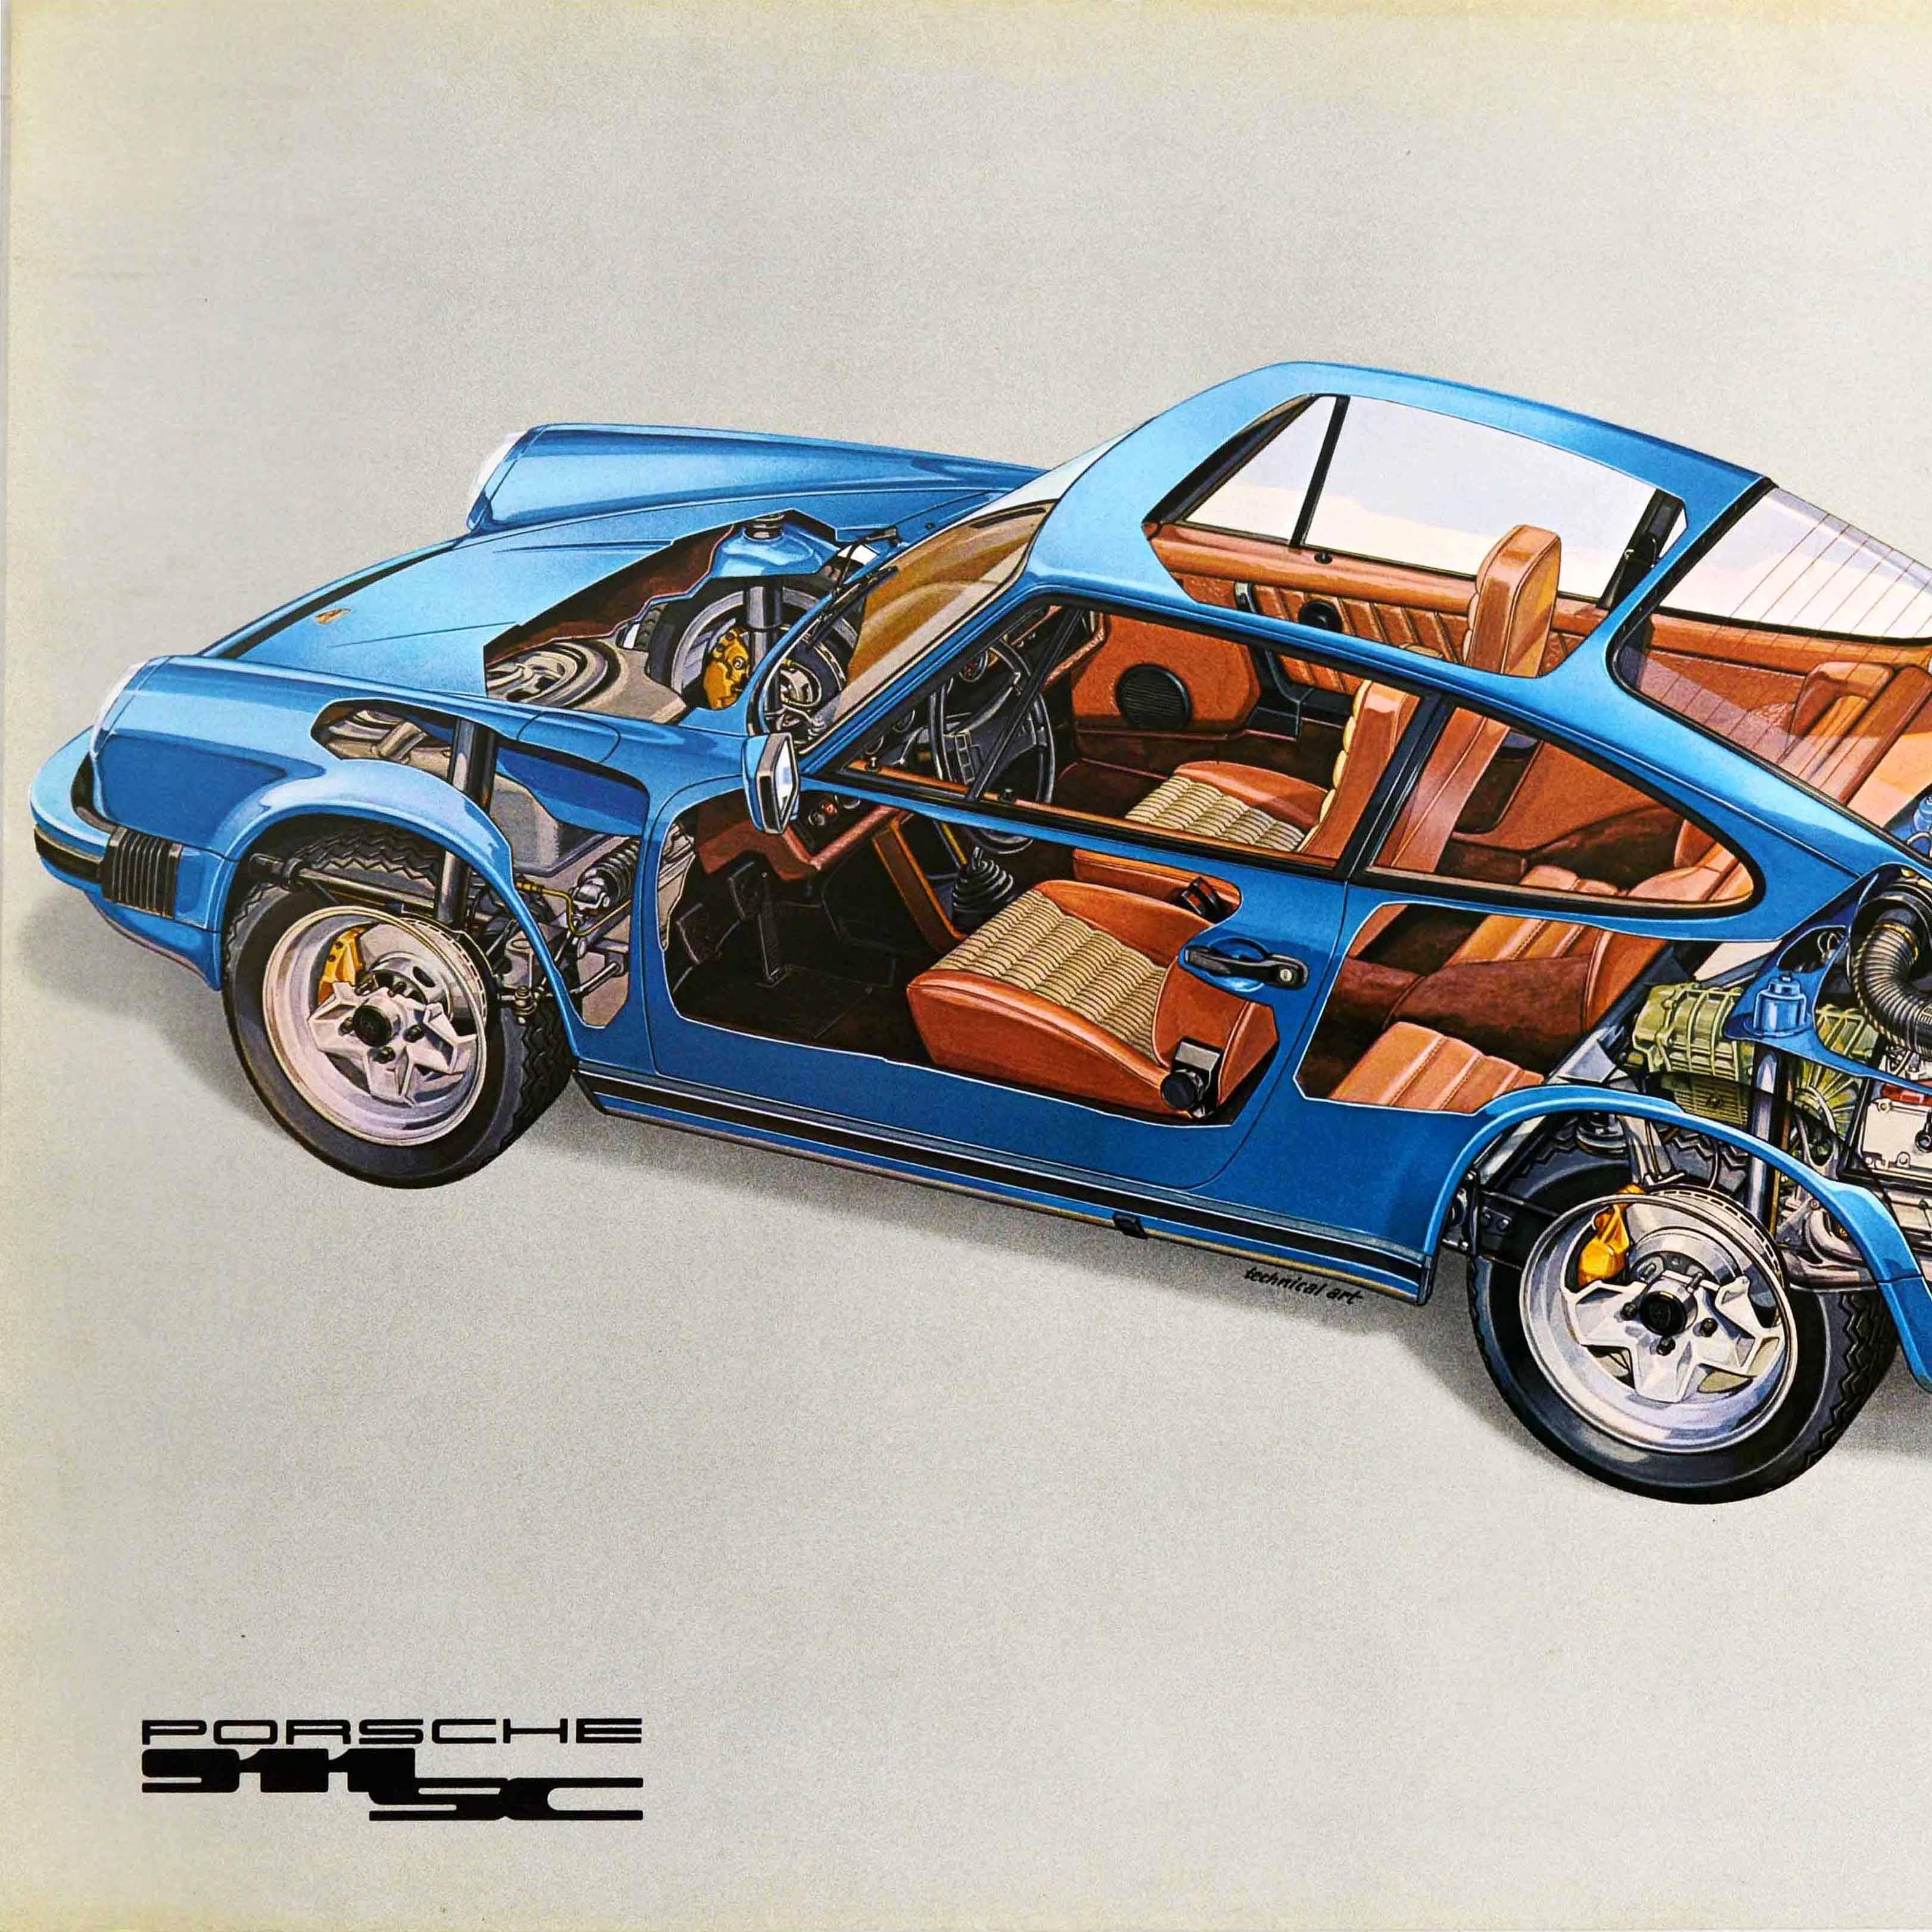 Original Vintage Autohaus Werbeplakat - Porsche 911 SC - mit einem Ausschnitt Design zeigt das Äußere und das Innere des Sportwagens von der Seite und durch das Dach, einschließlich der Motor und Räder, Sitze und Innenleben des Fahrzeugs mit dem